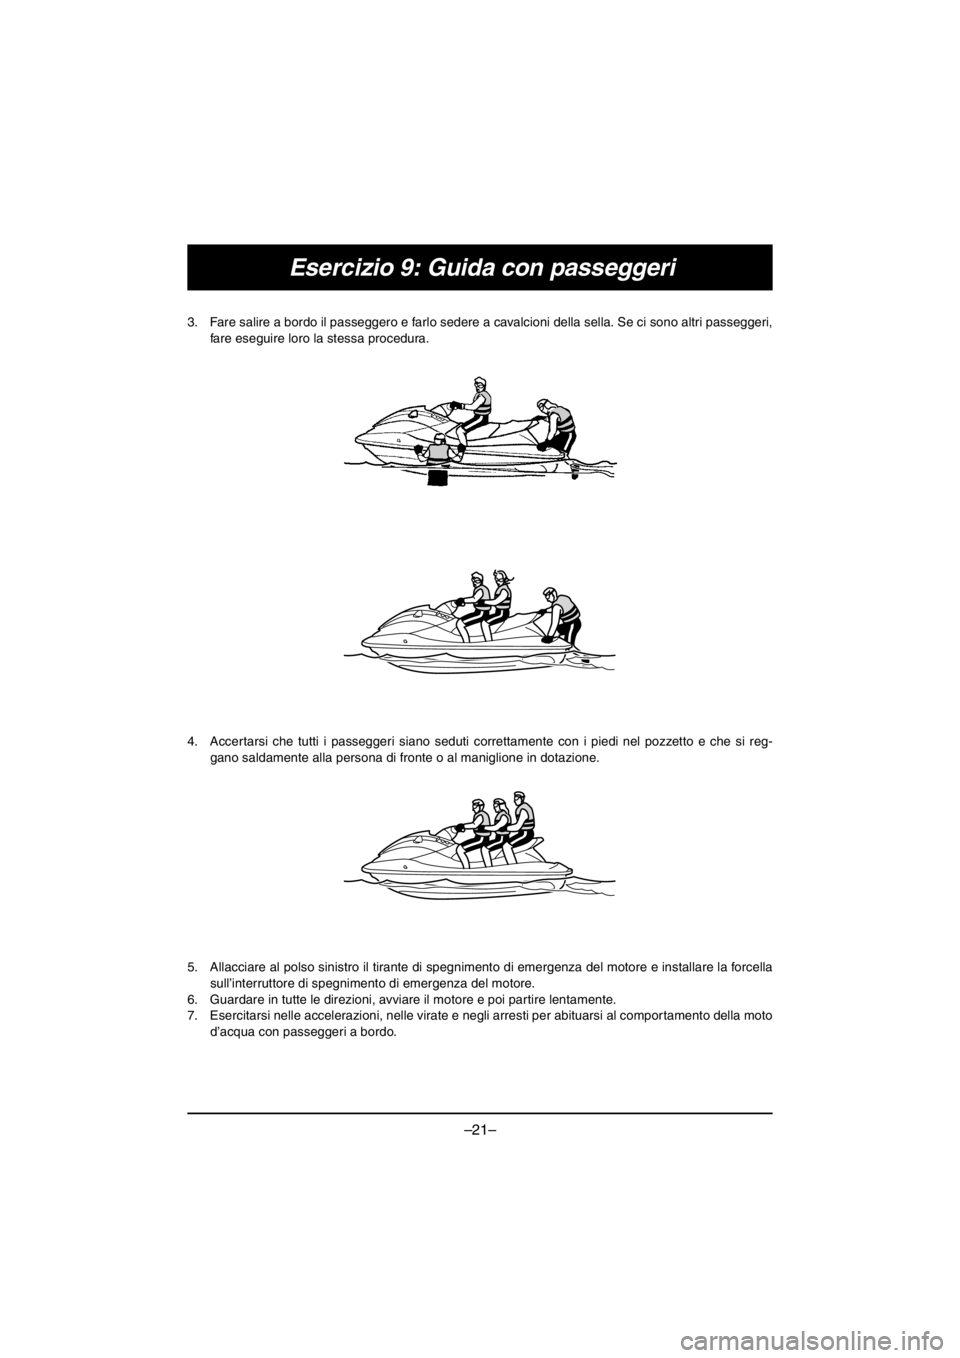 YAMAHA V1 2016  Owners Manual –21–
Esercizio 9: Guida con passeggeri
3. Fare salire a bordo il passeggero e farlo sedere a cavalcioni della sella. Se ci sono altri passeggeri,
fare eseguire loro la stessa procedura. 
4. Accert